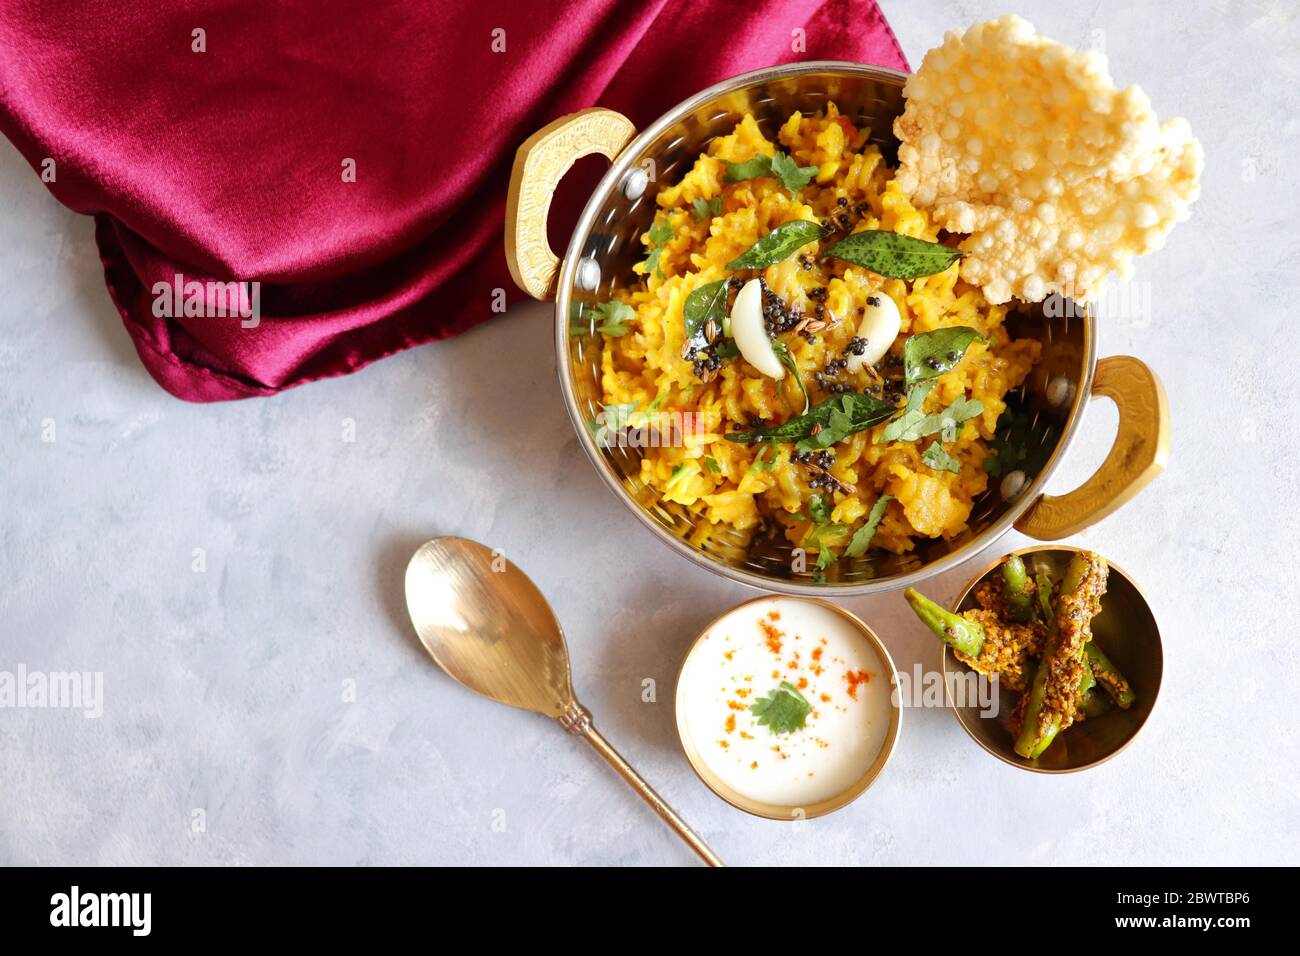 Dal khichadi/Masala Khichdi/daal khichdi Tadka ist ein gesundes indisches Rezept aus gemischten Linsen & Reis kombiniert mit Gewürzen & Gemüse. Stockfoto